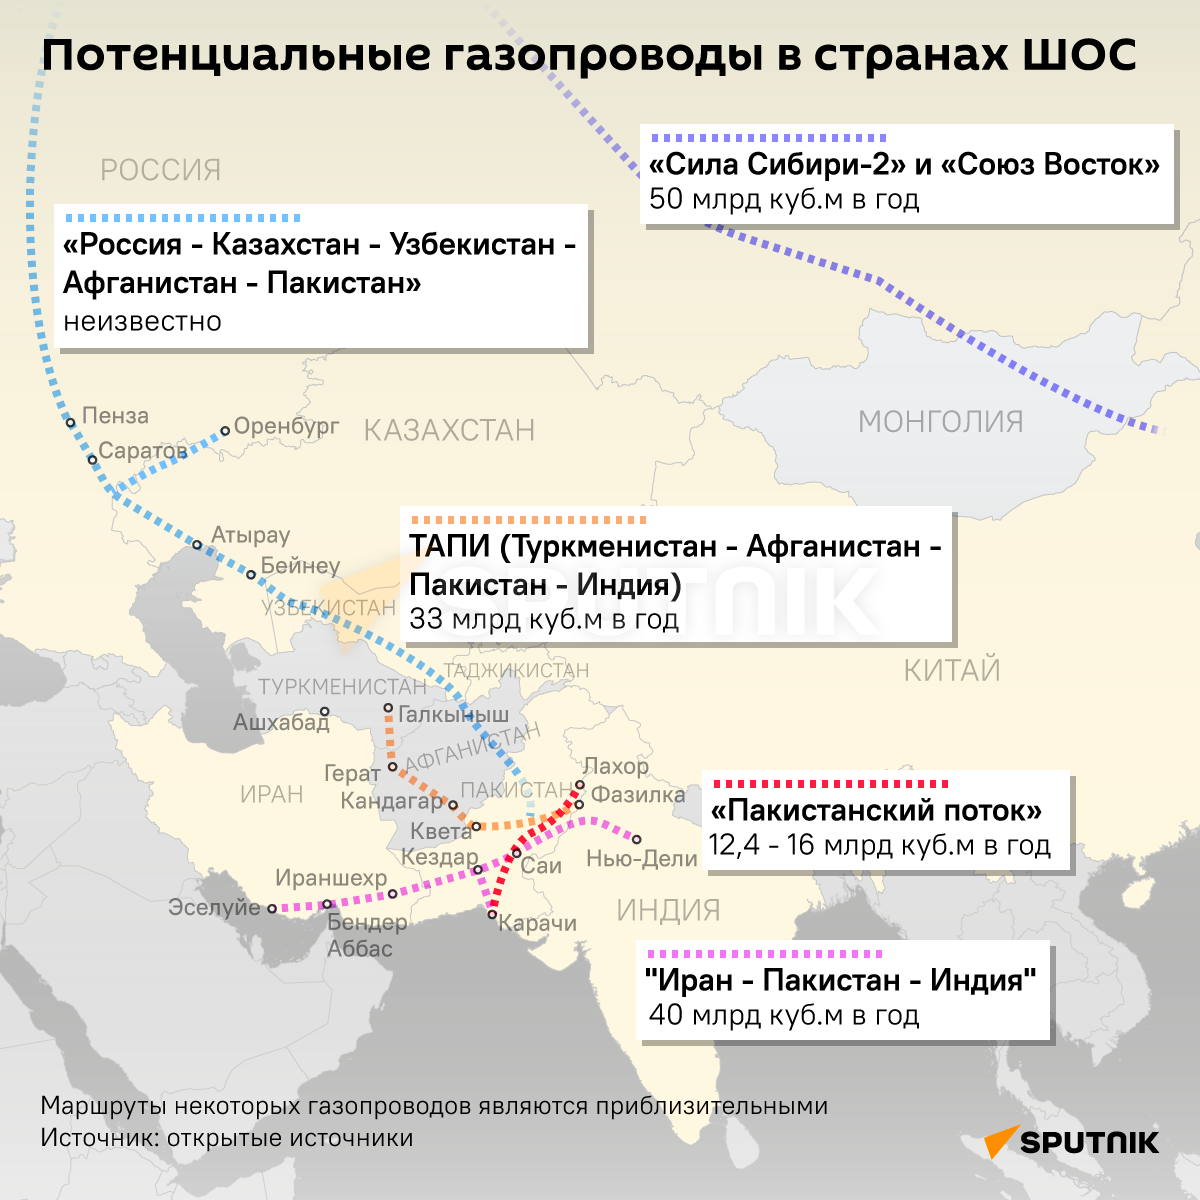 Инфографика: Потенциальные газопроводы в странах ШОС - Sputnik Азербайджан